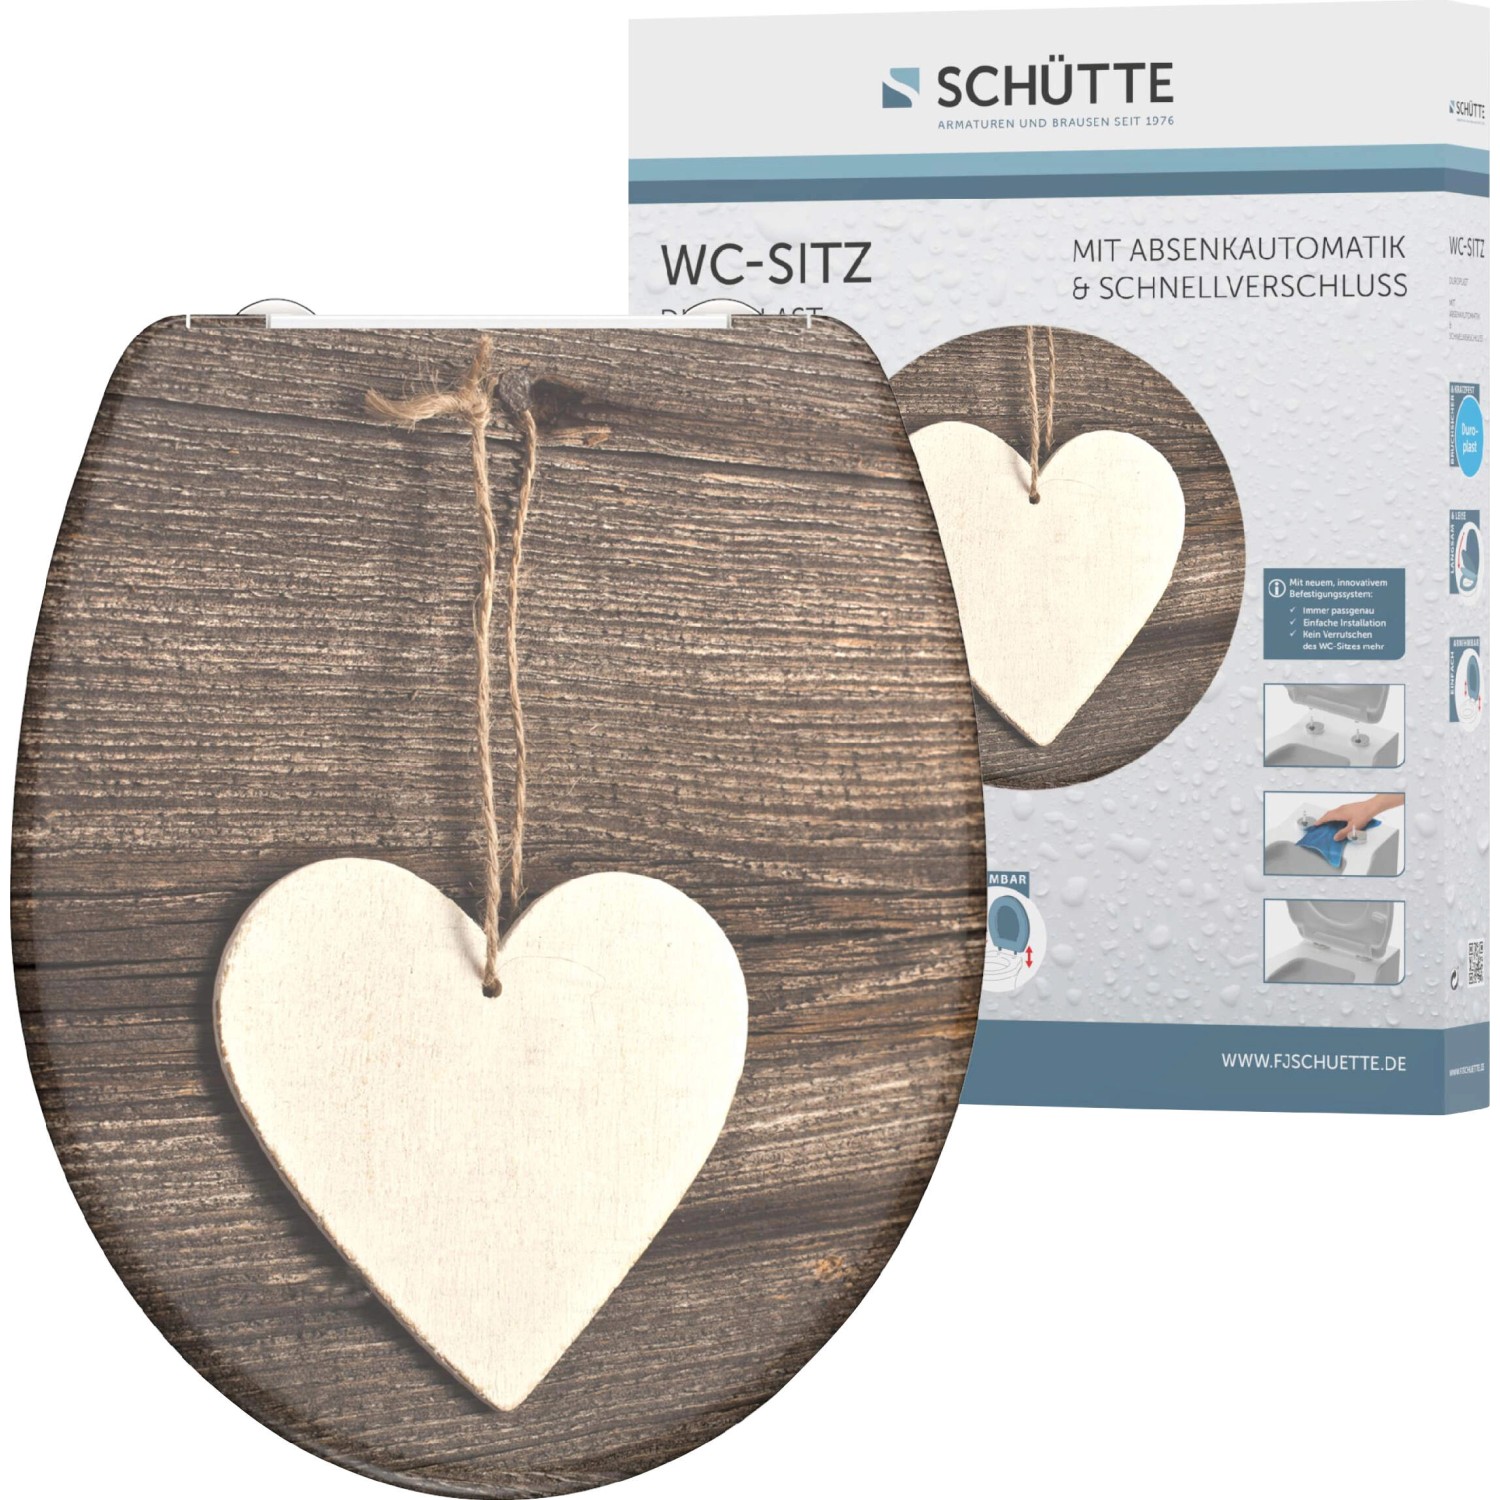 Schütte WC-Sitz Wood Heart Duroplast mit Absenkautomatik & Schnellverschluss